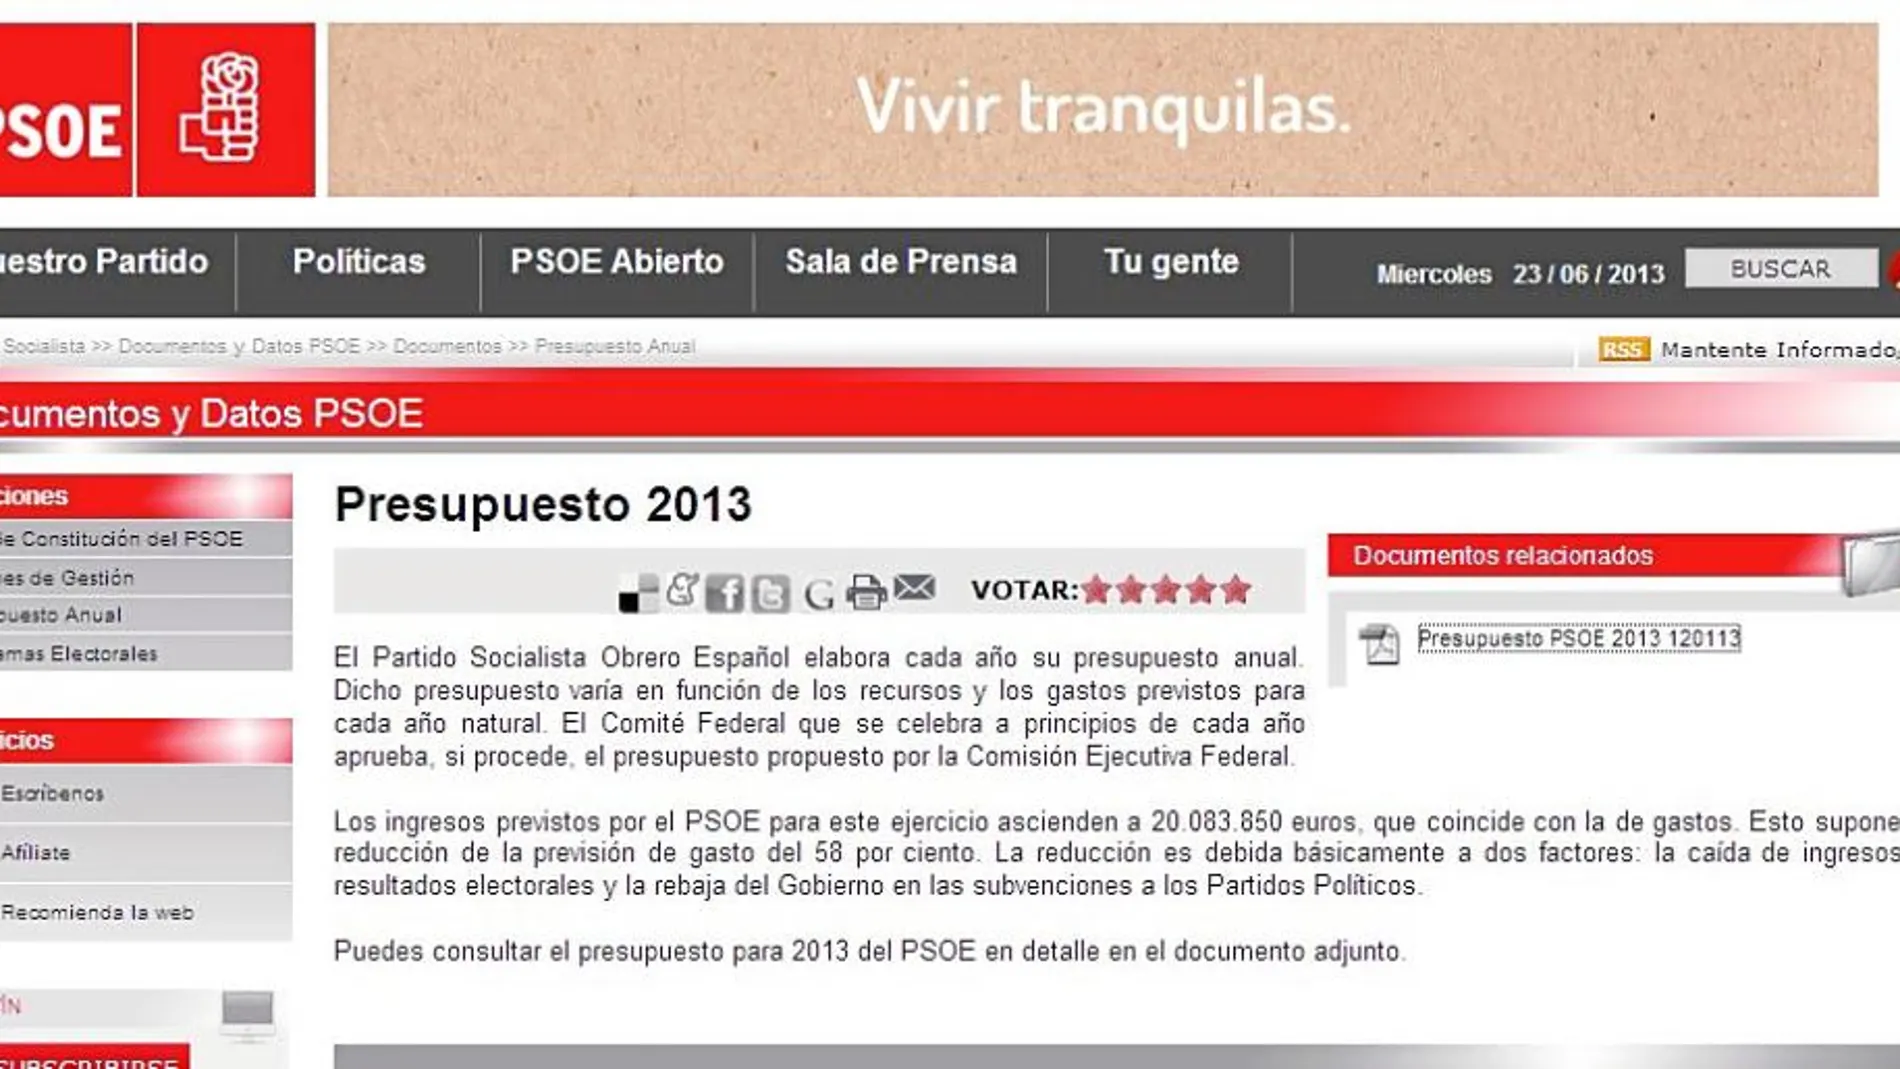 El único documento relativo a las cuentas del PSOE que se puede consultar en la actualidad en la web de esta formación política es precisamente el presupuesto de este año.